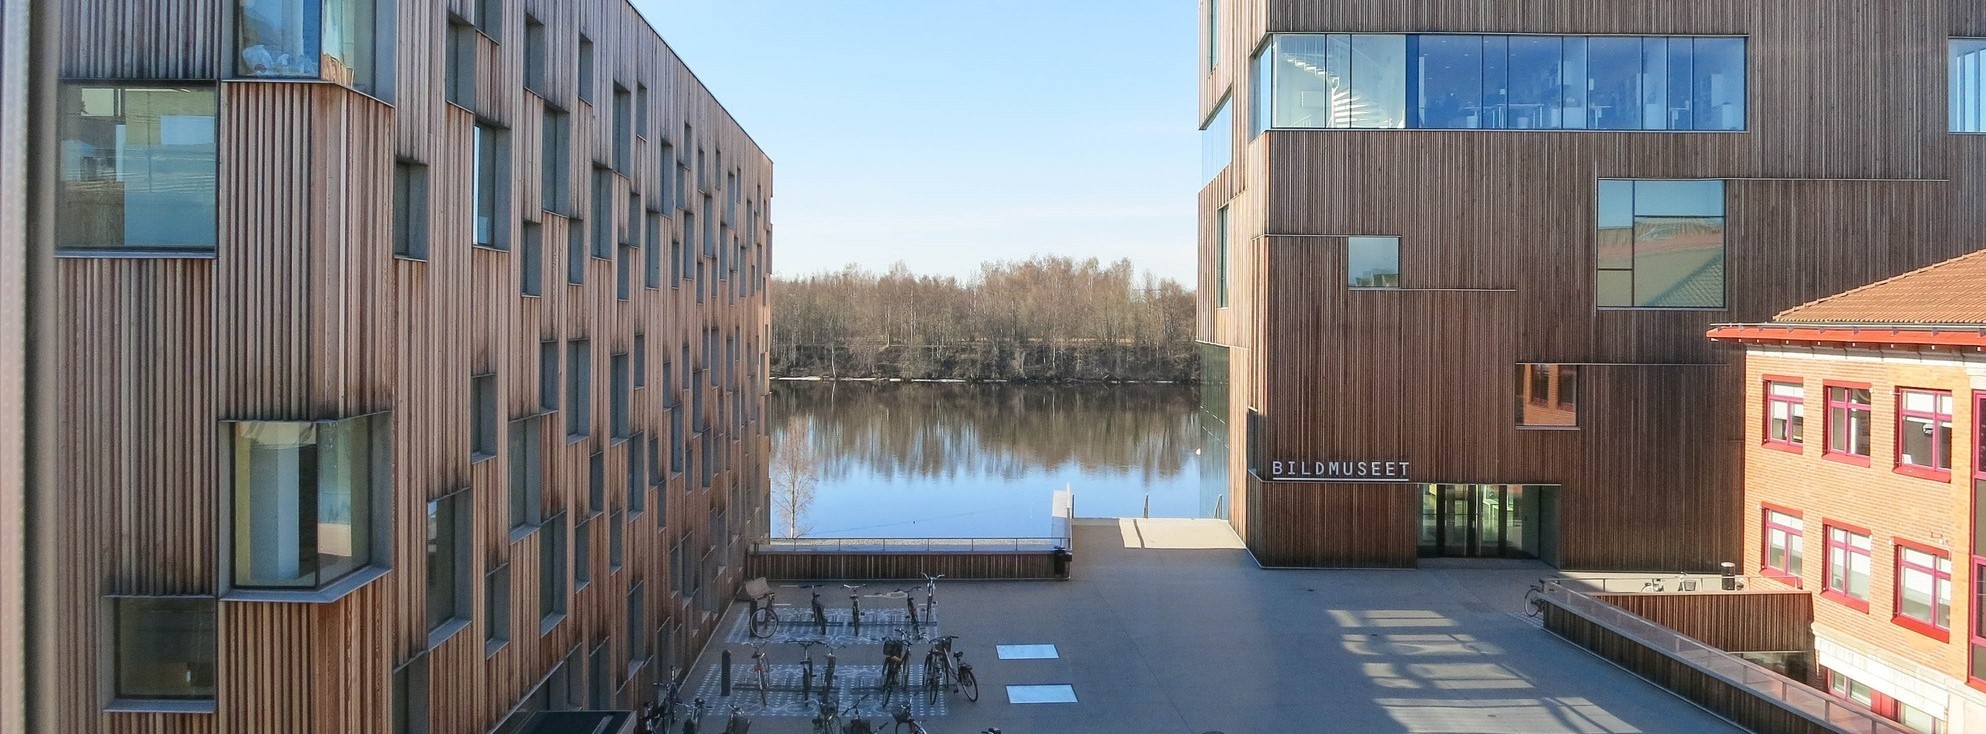 Bilden visar Konstnärligt campus som är byggd av trä och visar upp enspännande arkitektur . Bakom husen syns Umeåälv.